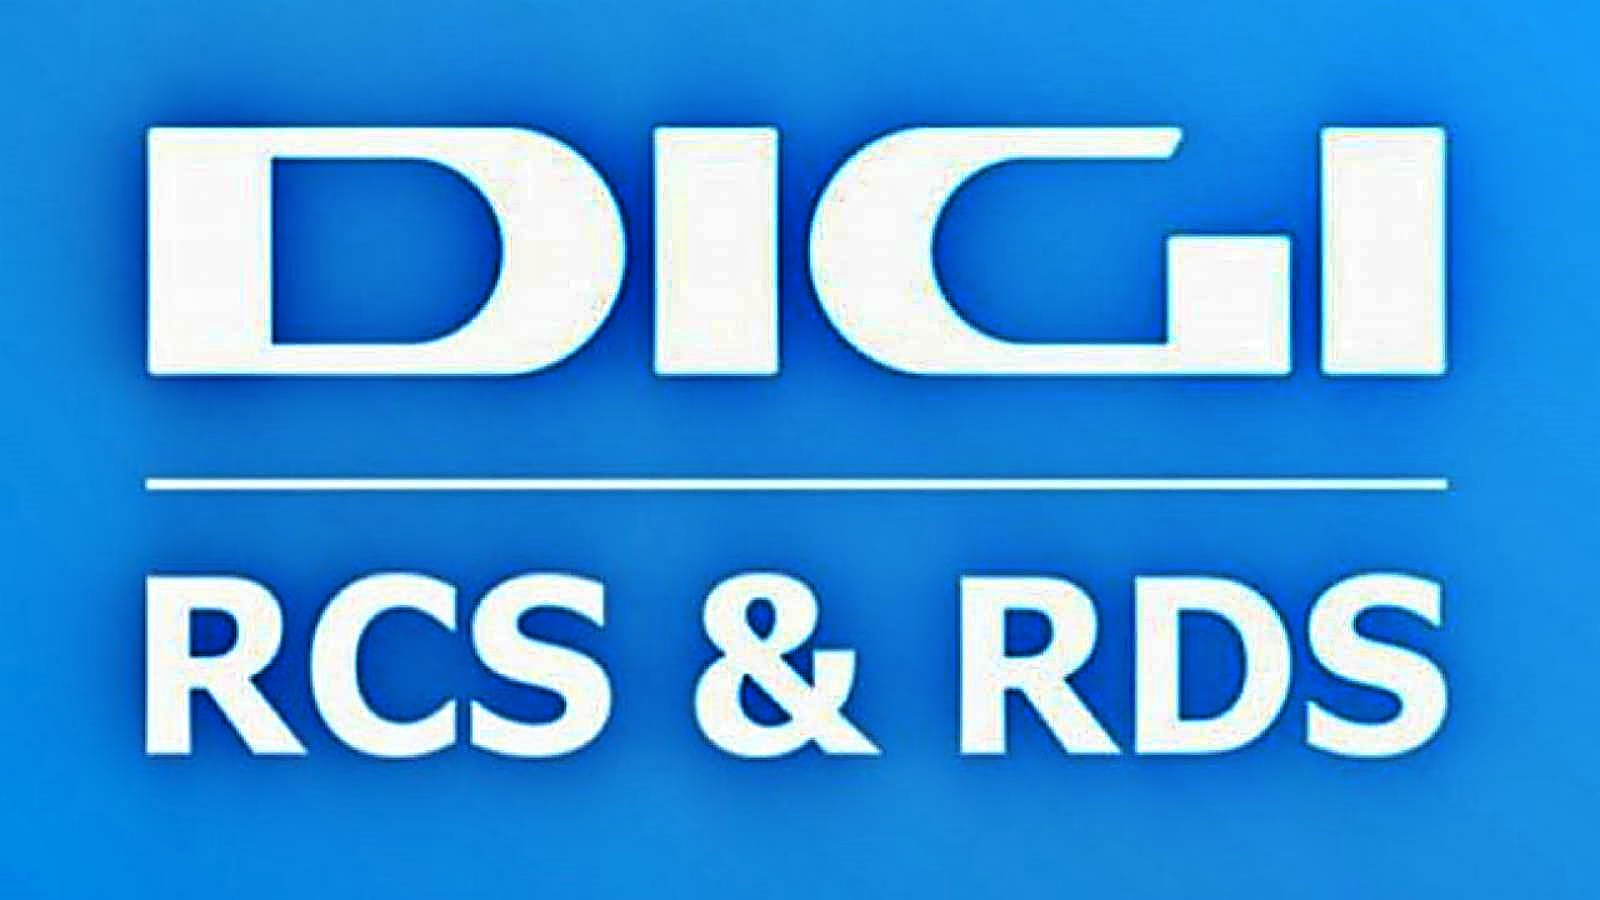 DIGI RCS & RDS Hovedbeslutning Millioner af kunder tilbyder nu